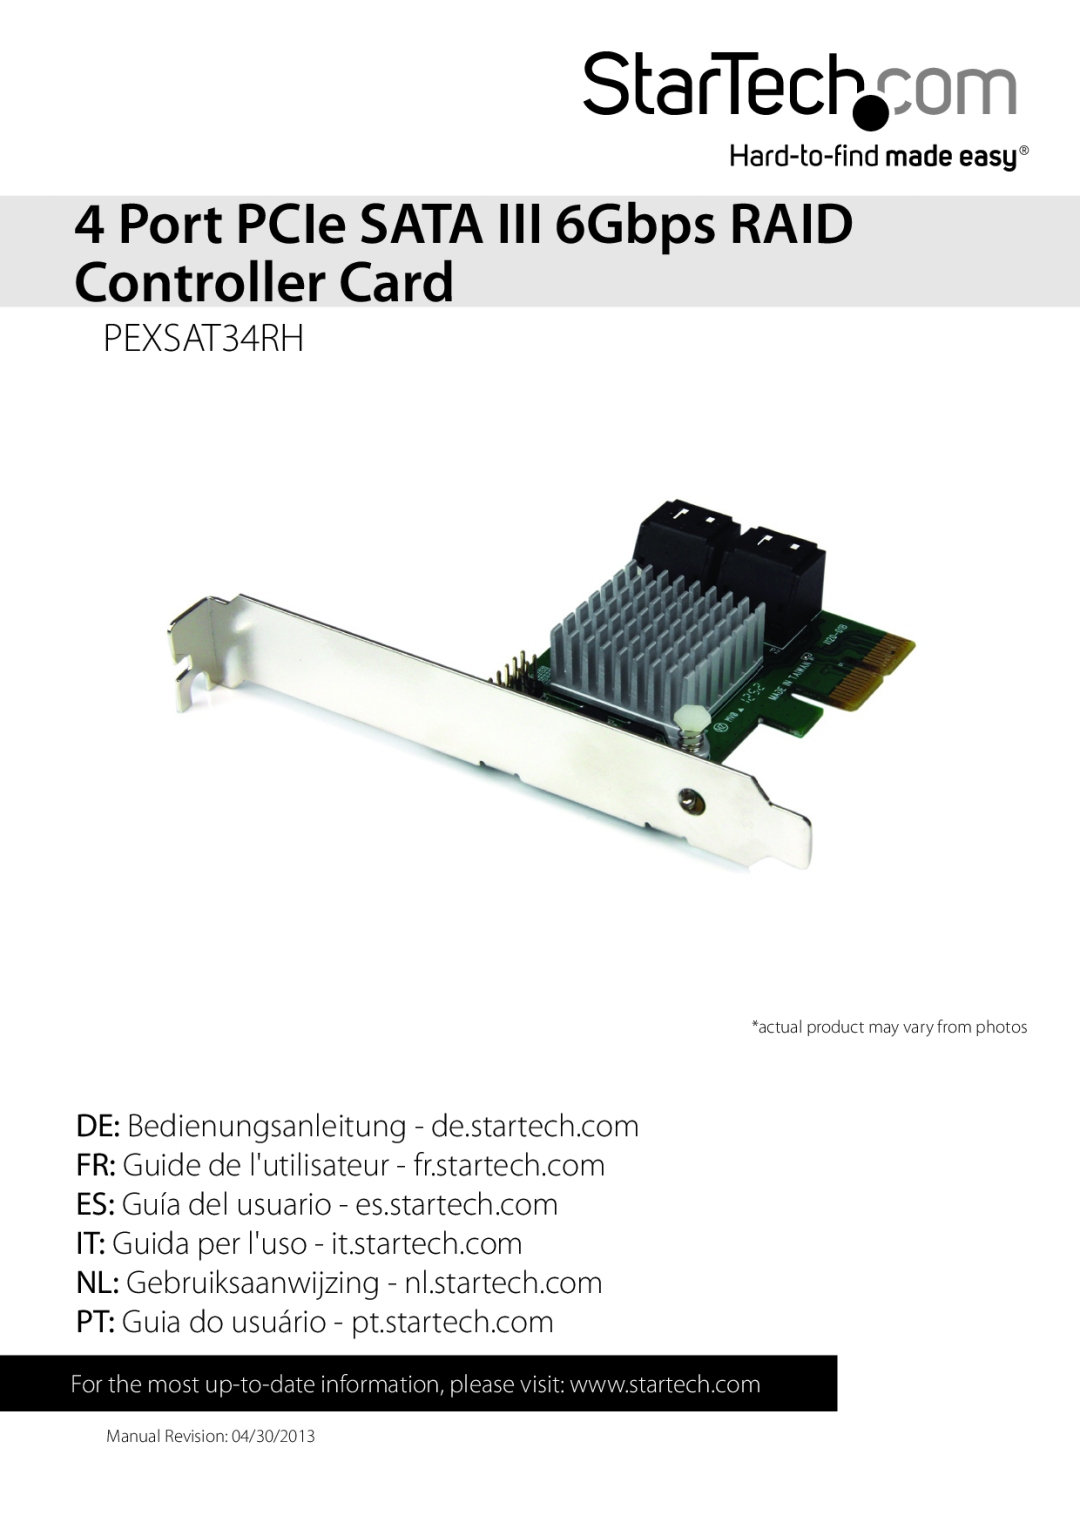 StarTech.com PEXSAT34RH manual Port PCIe SATA III 6Gbps RAID Controller Card, DE Bedienungsanleitung - de.startech.com 